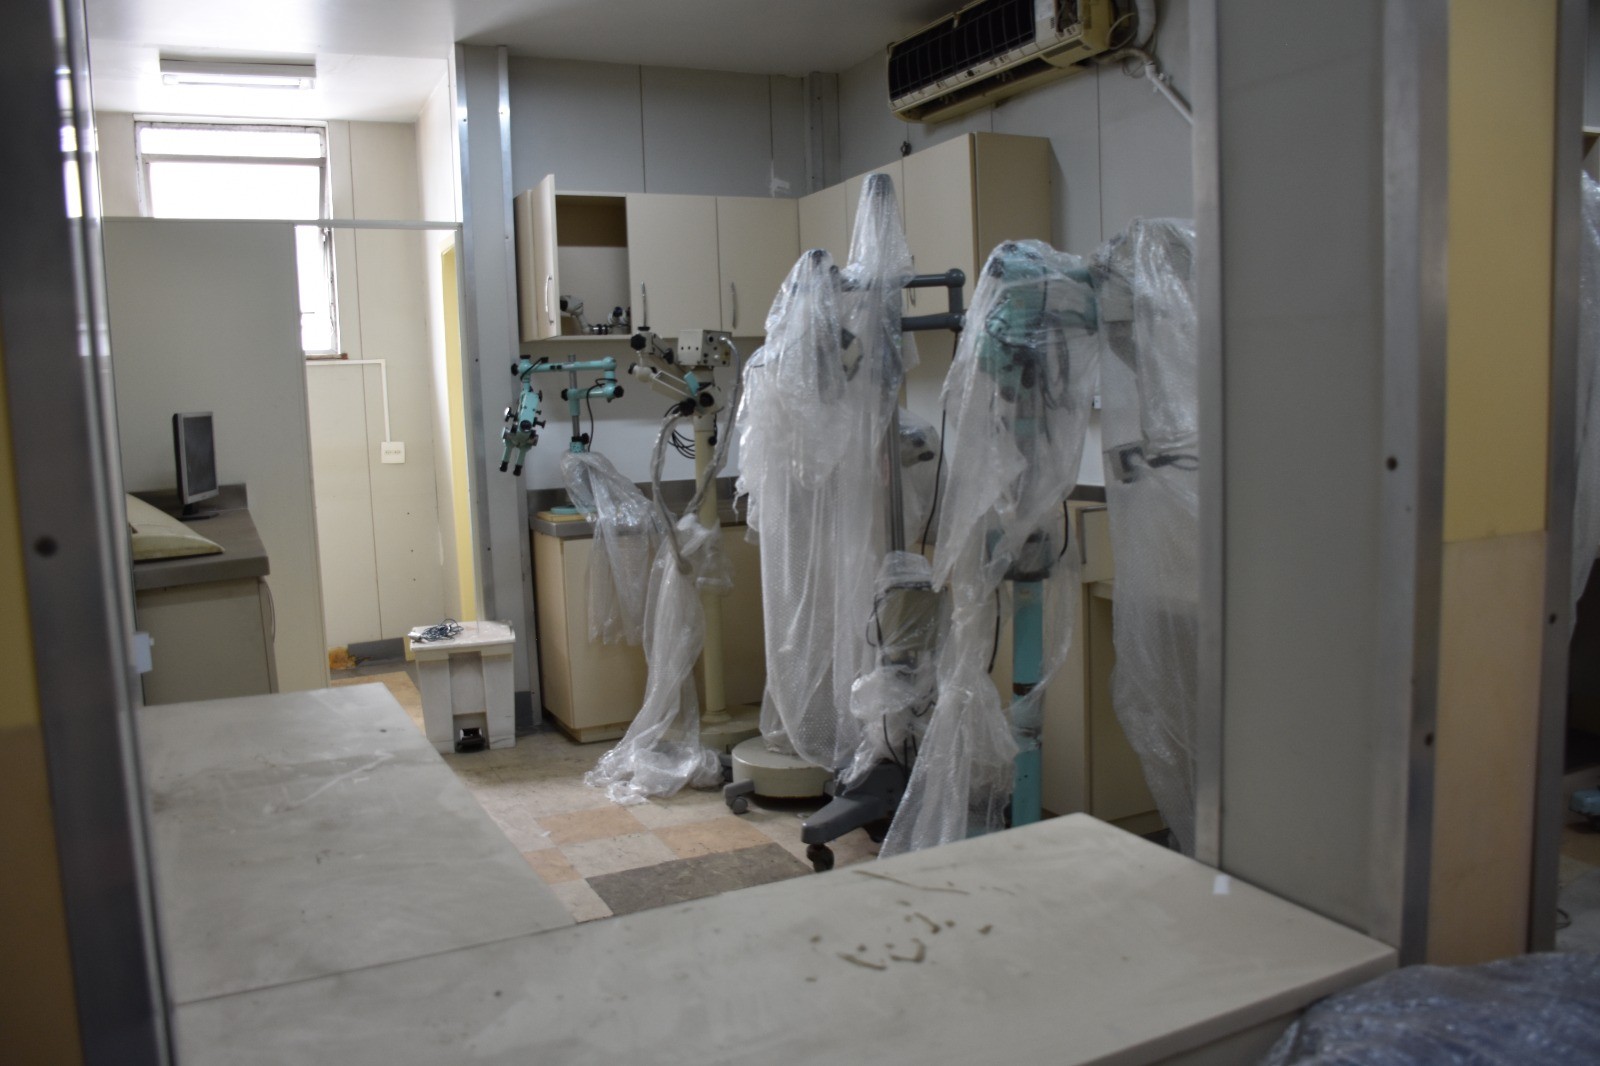  Setor de Curta Permanência com enfermaria totalmente fechada. Ao todo são 18 leitos interditados no Hospital Federal de Bonsucesso — Foto: Reprodução relatório